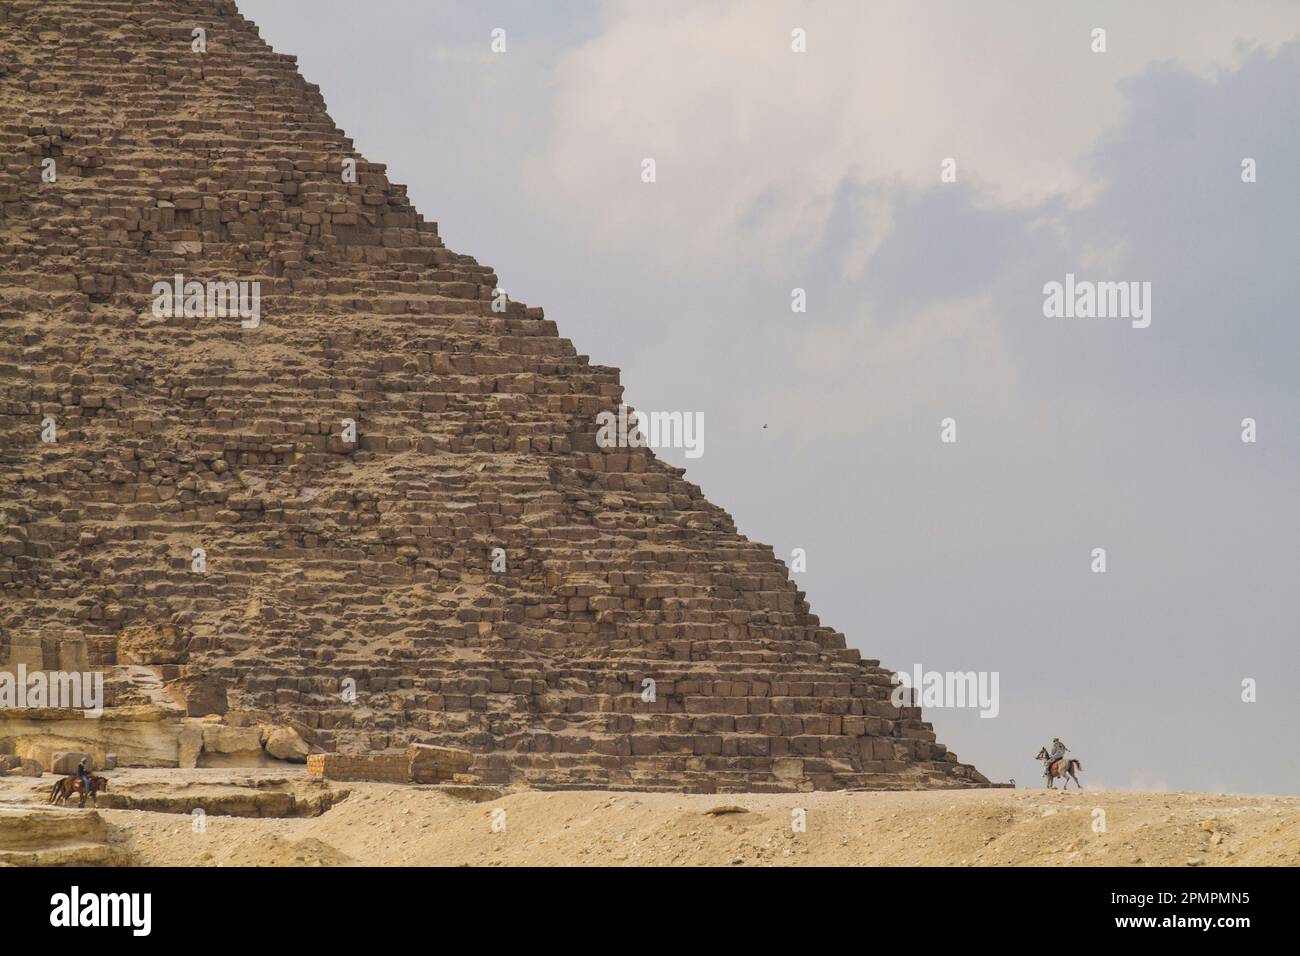 La Grande Pyramide de Gizeh en Egypte ; le Caire, Egypte Banque D'Images